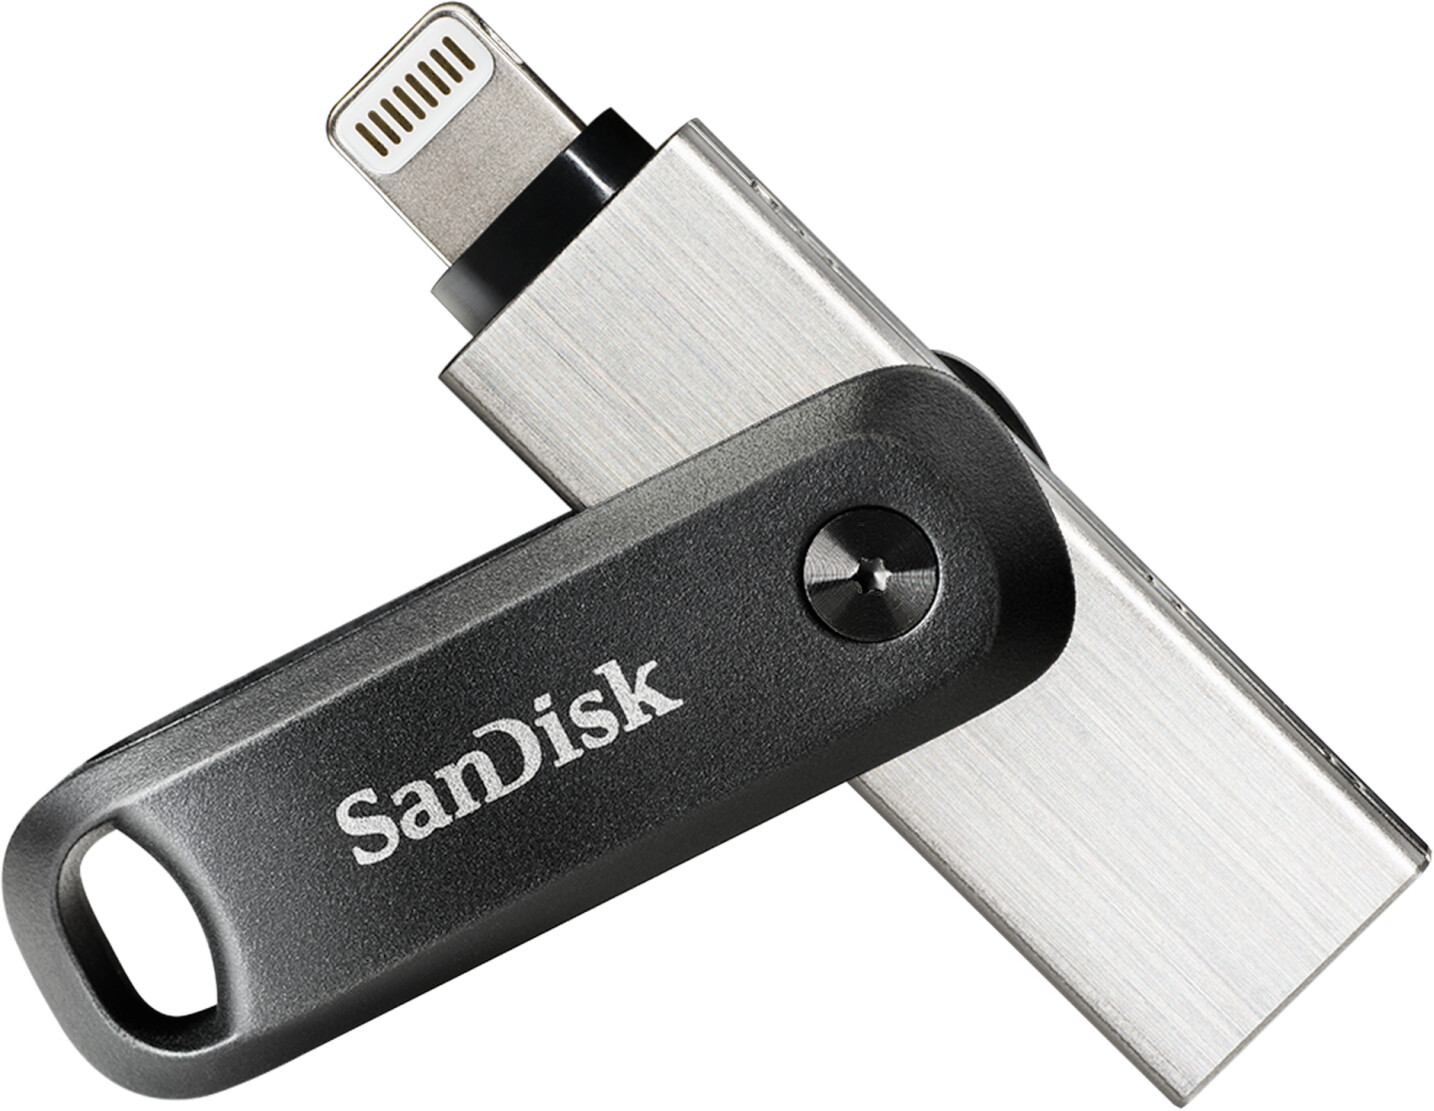 SanDisk iXpand GO 256 Go au meilleur prix sur